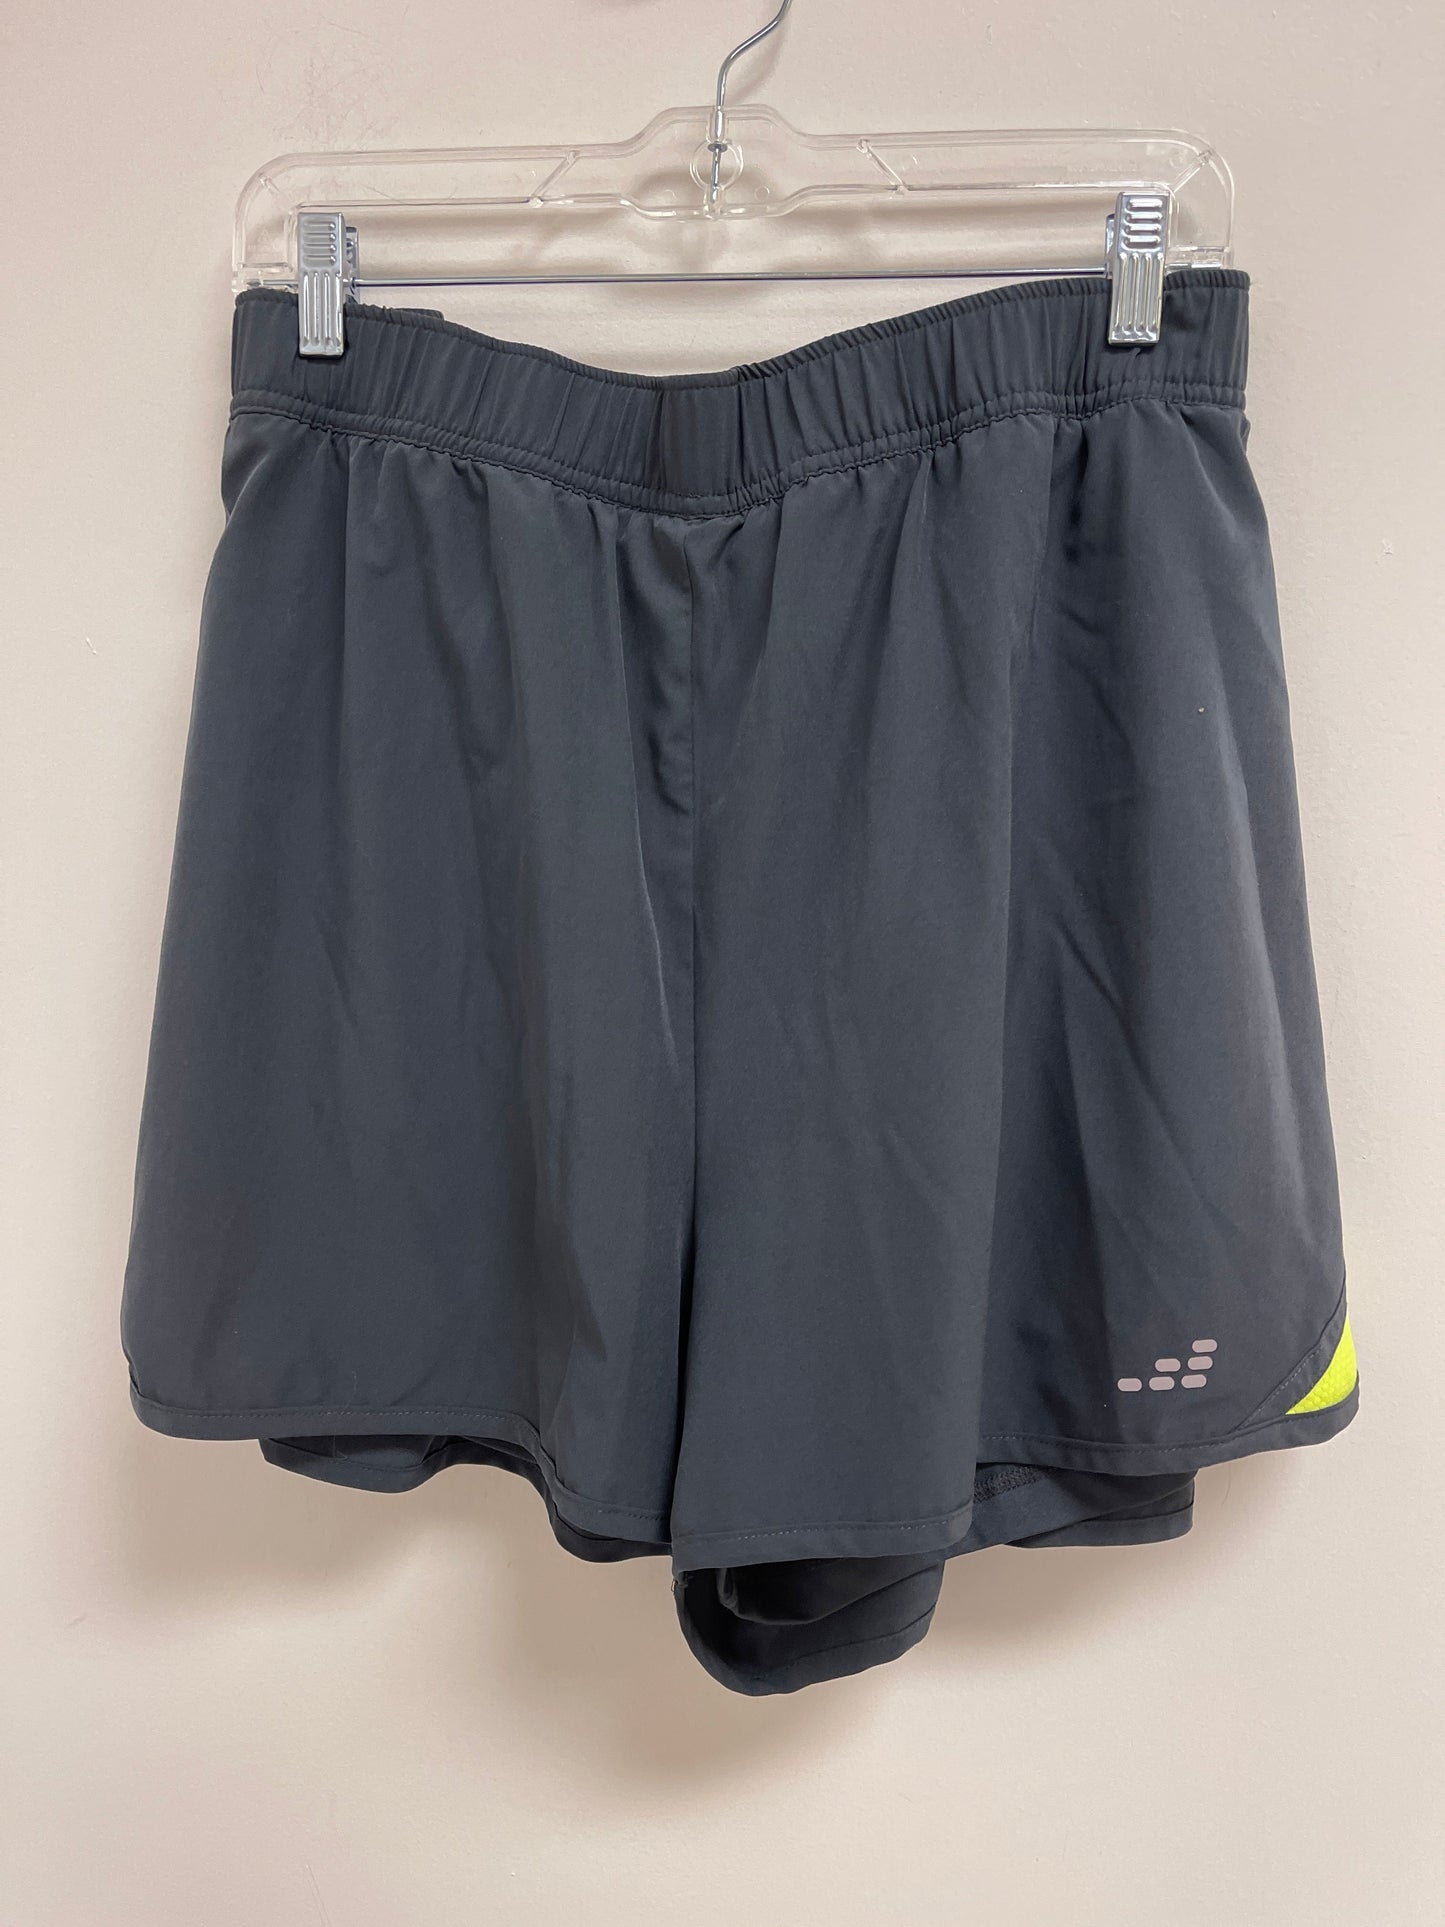 Grey Athletic Shorts Bcg, Size 3x